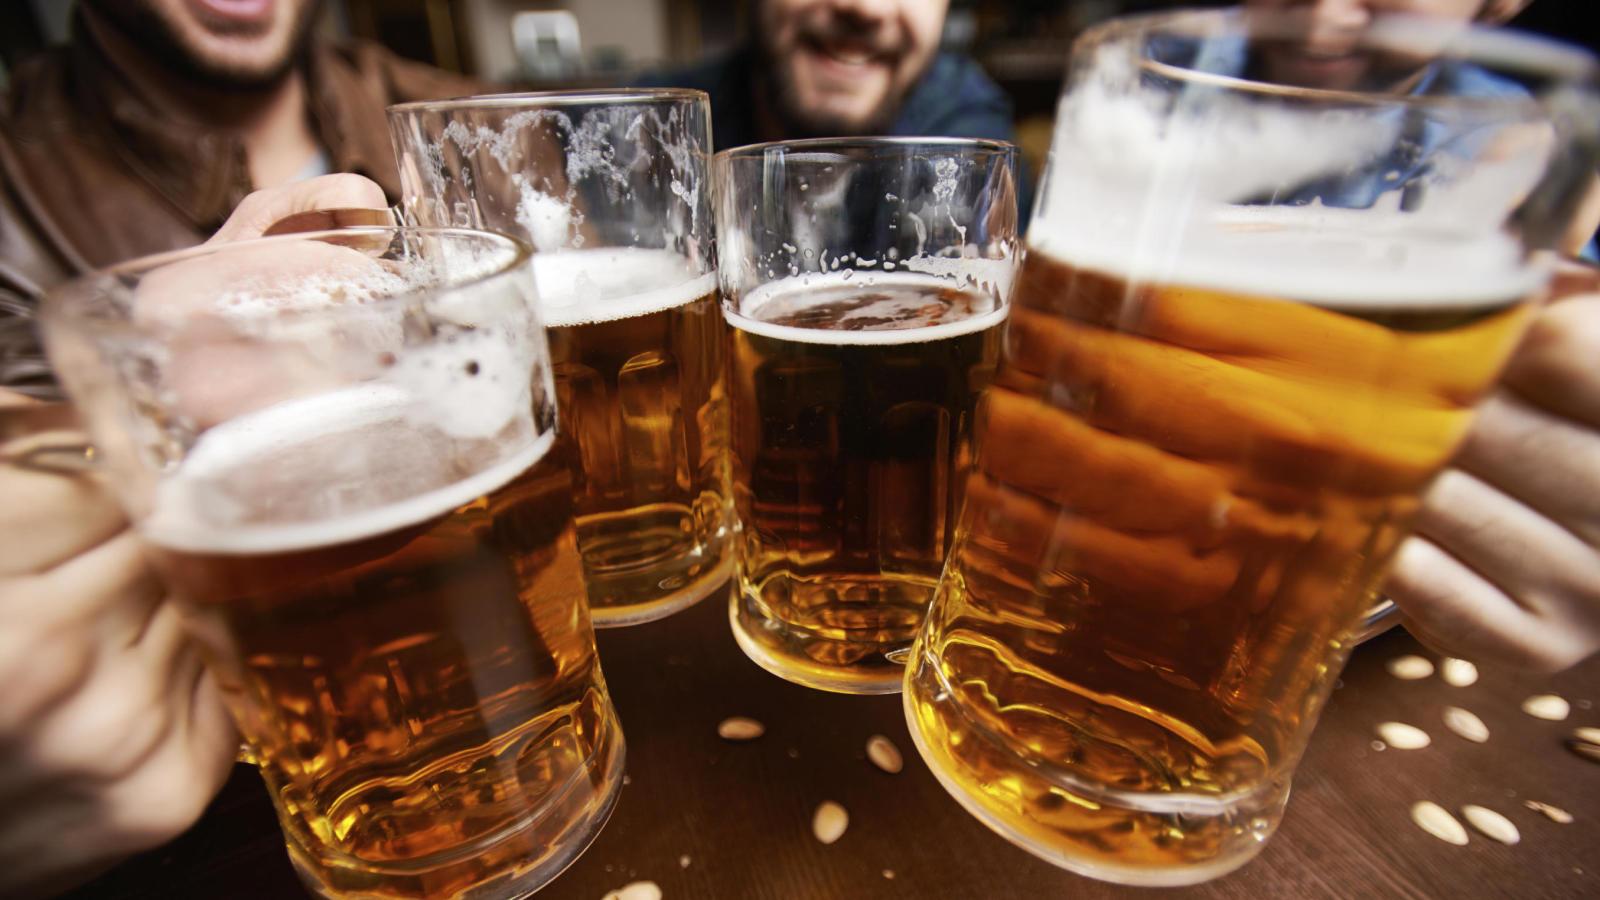 Diputado propone impuesto de ¢10 a cada cerveza para fortalecer IVM